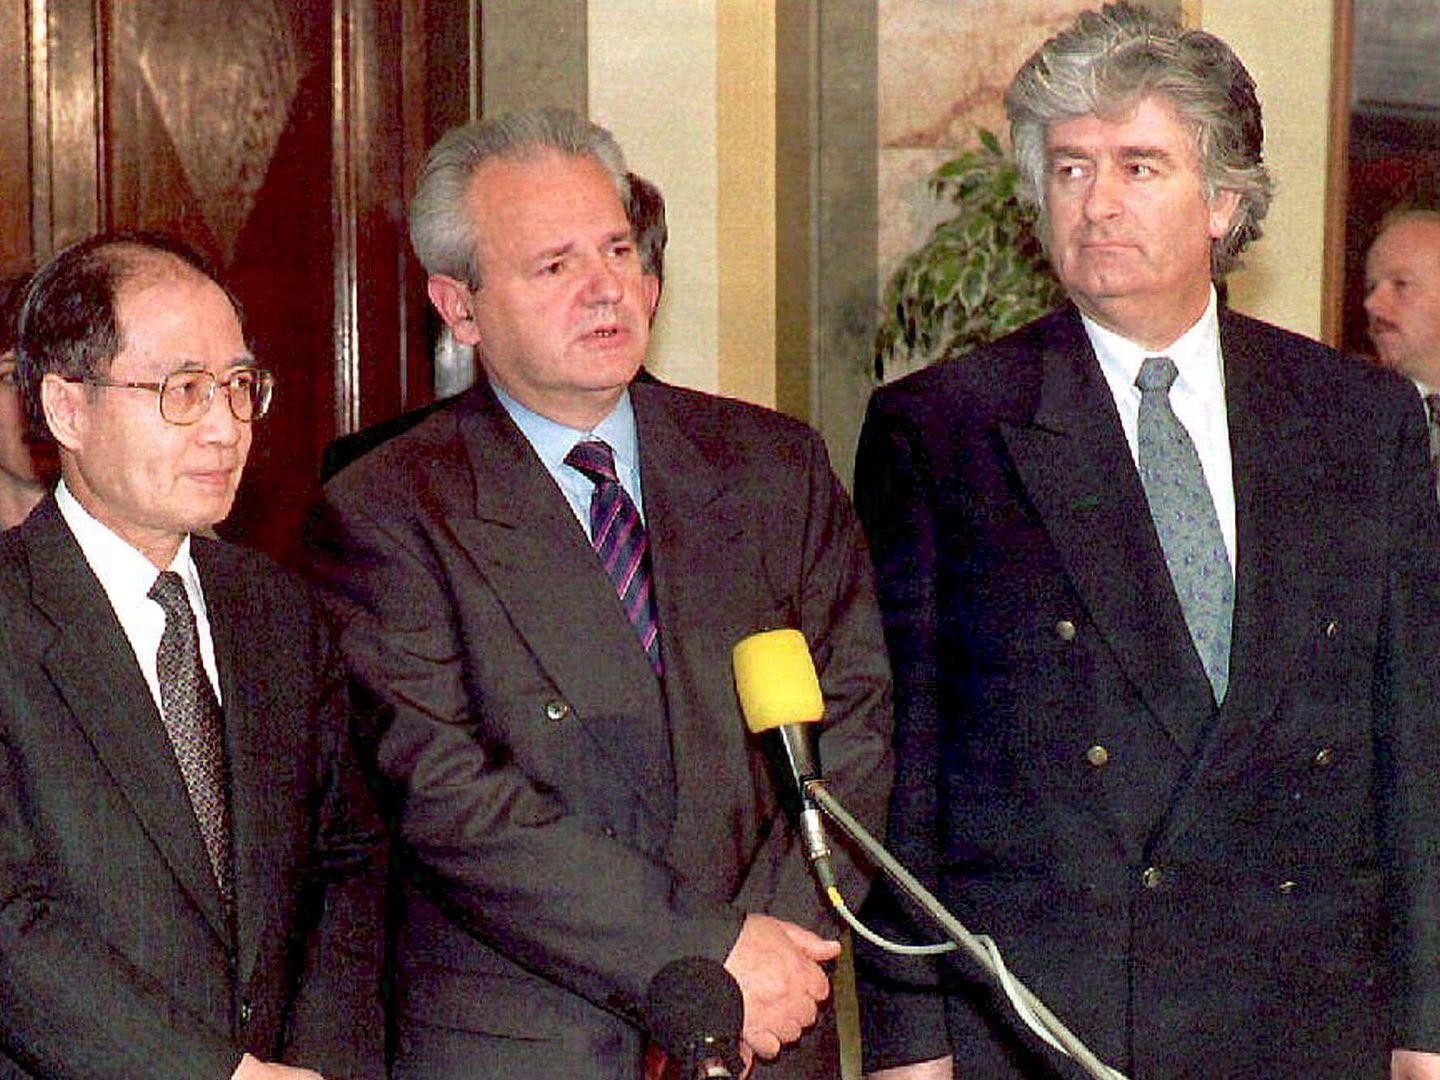 El líder serbo-bosnio Radovan Karadzic, junto al presidente yugoslavo, Slobodan Milosevic, y el enviado especial de la ONU para la antigua Yugoslavia, Yasushi Akashi (izq.), durante la guerra en 1994. (EFE)